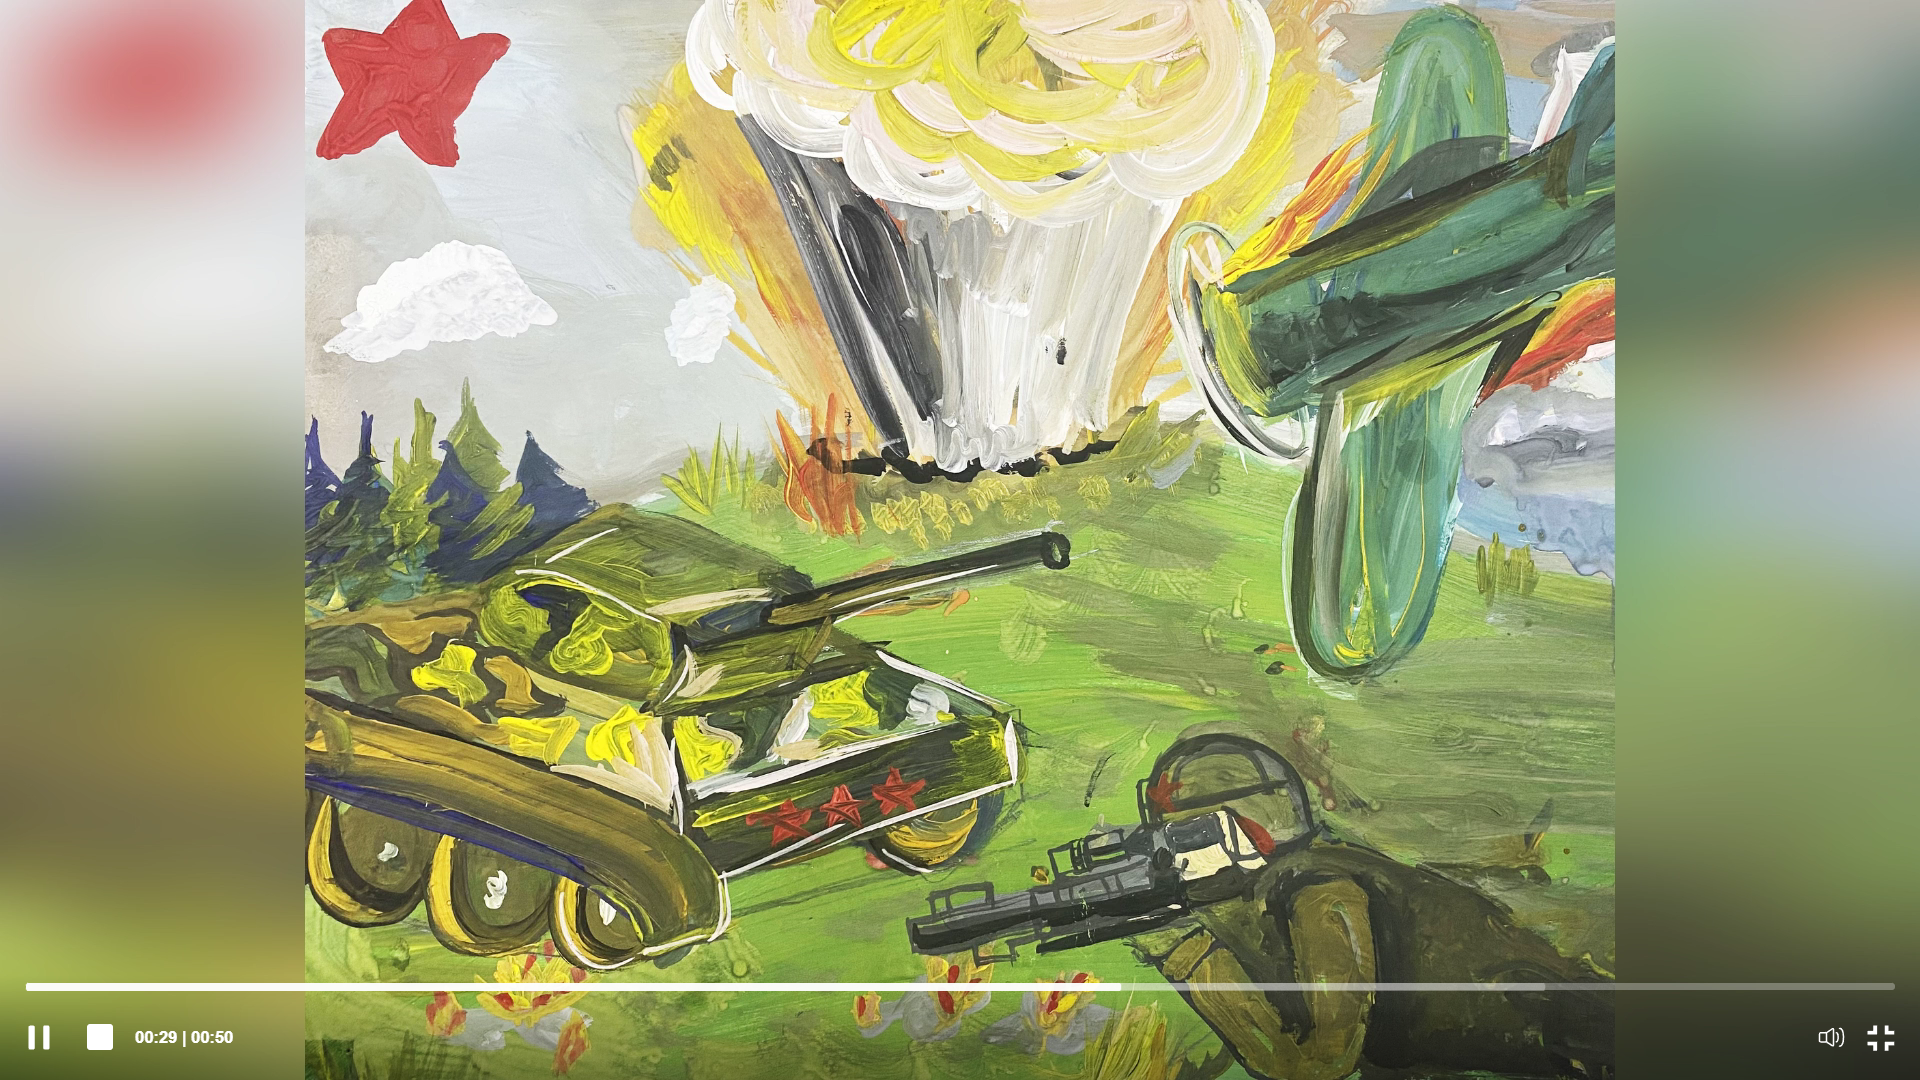 Рисунок с конкурса «Нет войне». Скриншот с сайта управления Генпрокуратуры по Сибирскому ФО.